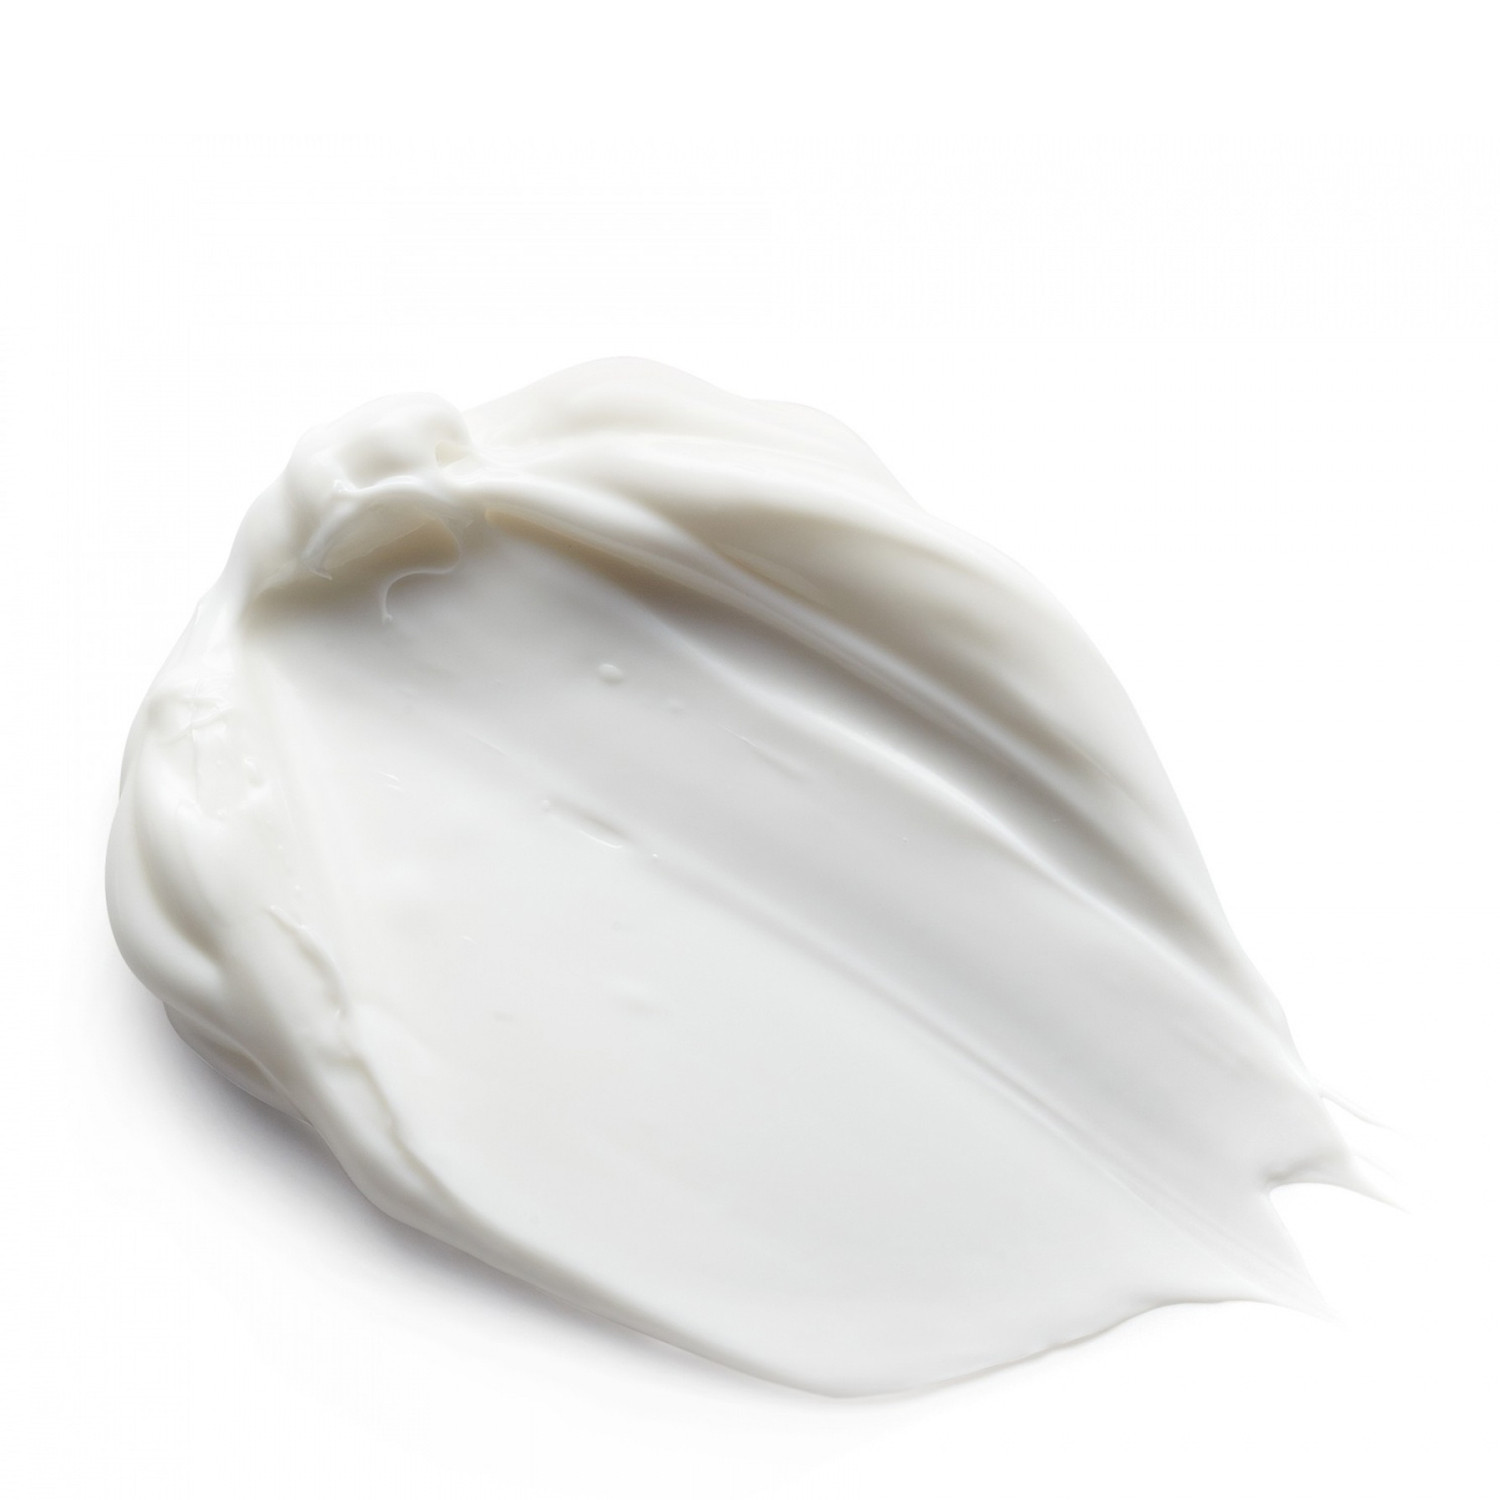 Крем для умывания Антивозрастной Elemis Pro-Radiance Cream Cleanser